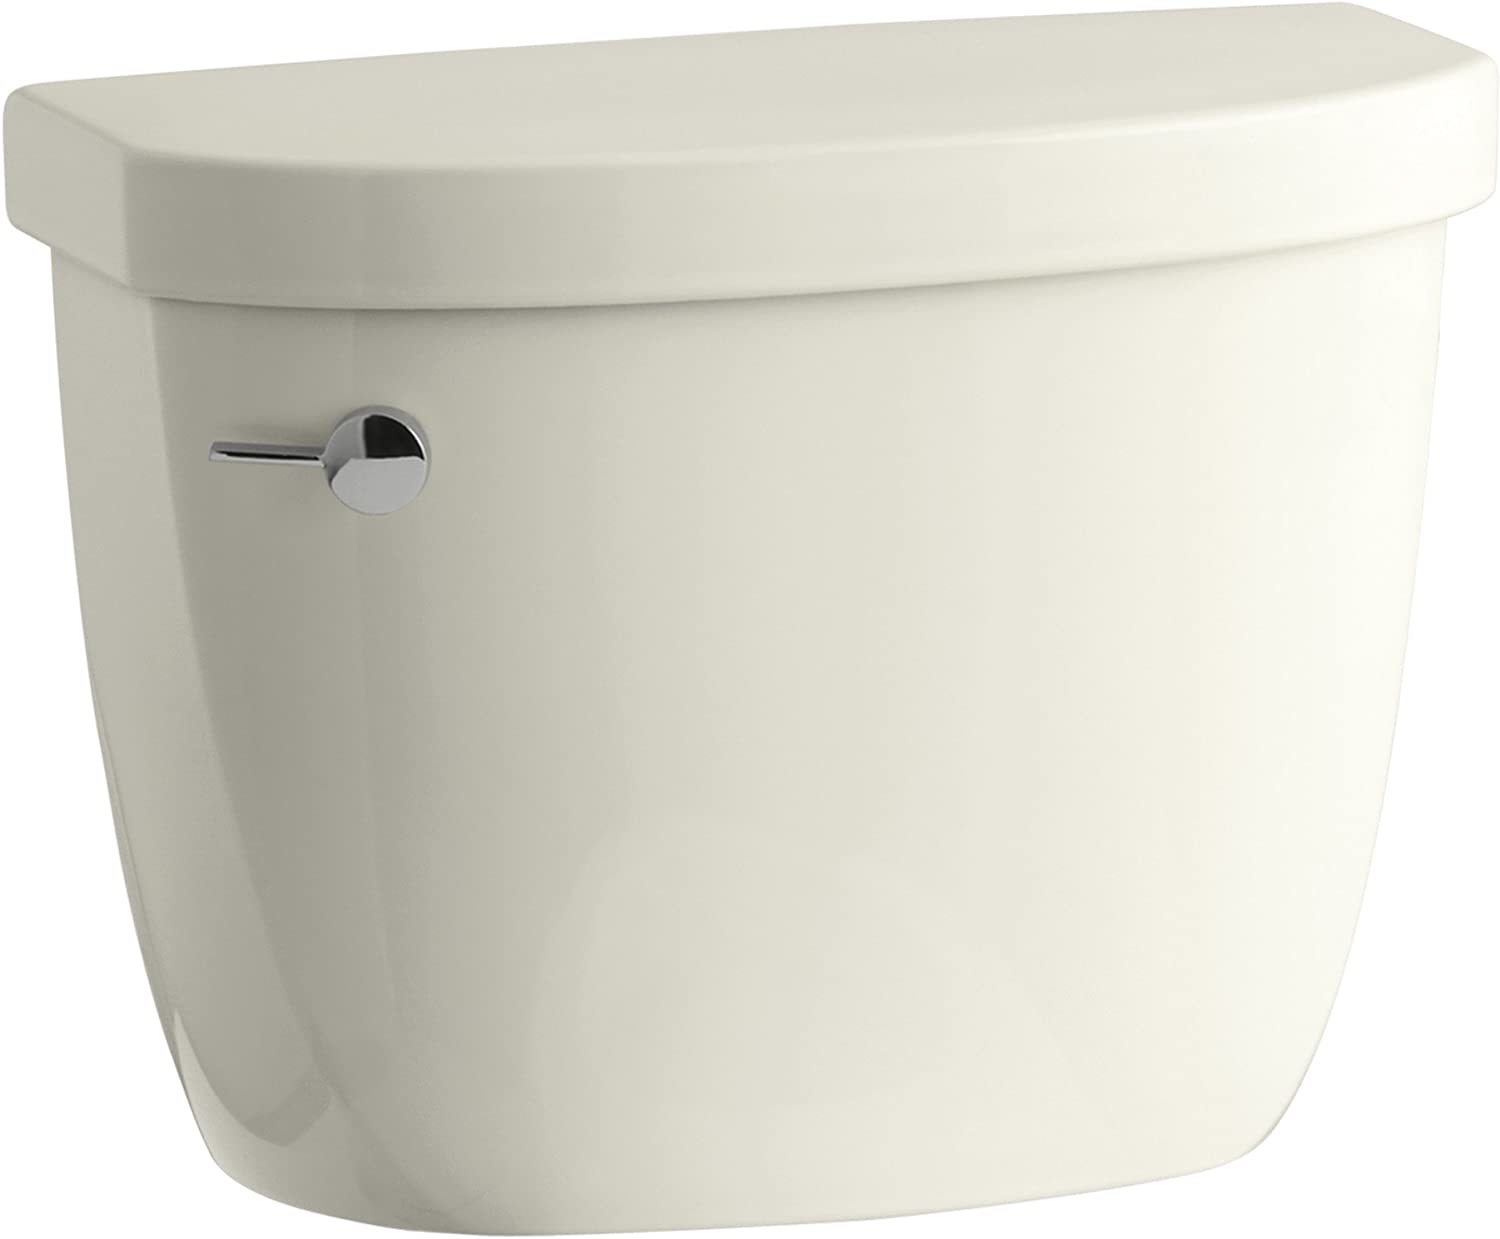 Kohler 4369-96 Cimarron 1.28 Gpf Toilet Tank With Aquapiston Flush, Biscuit - $200.99